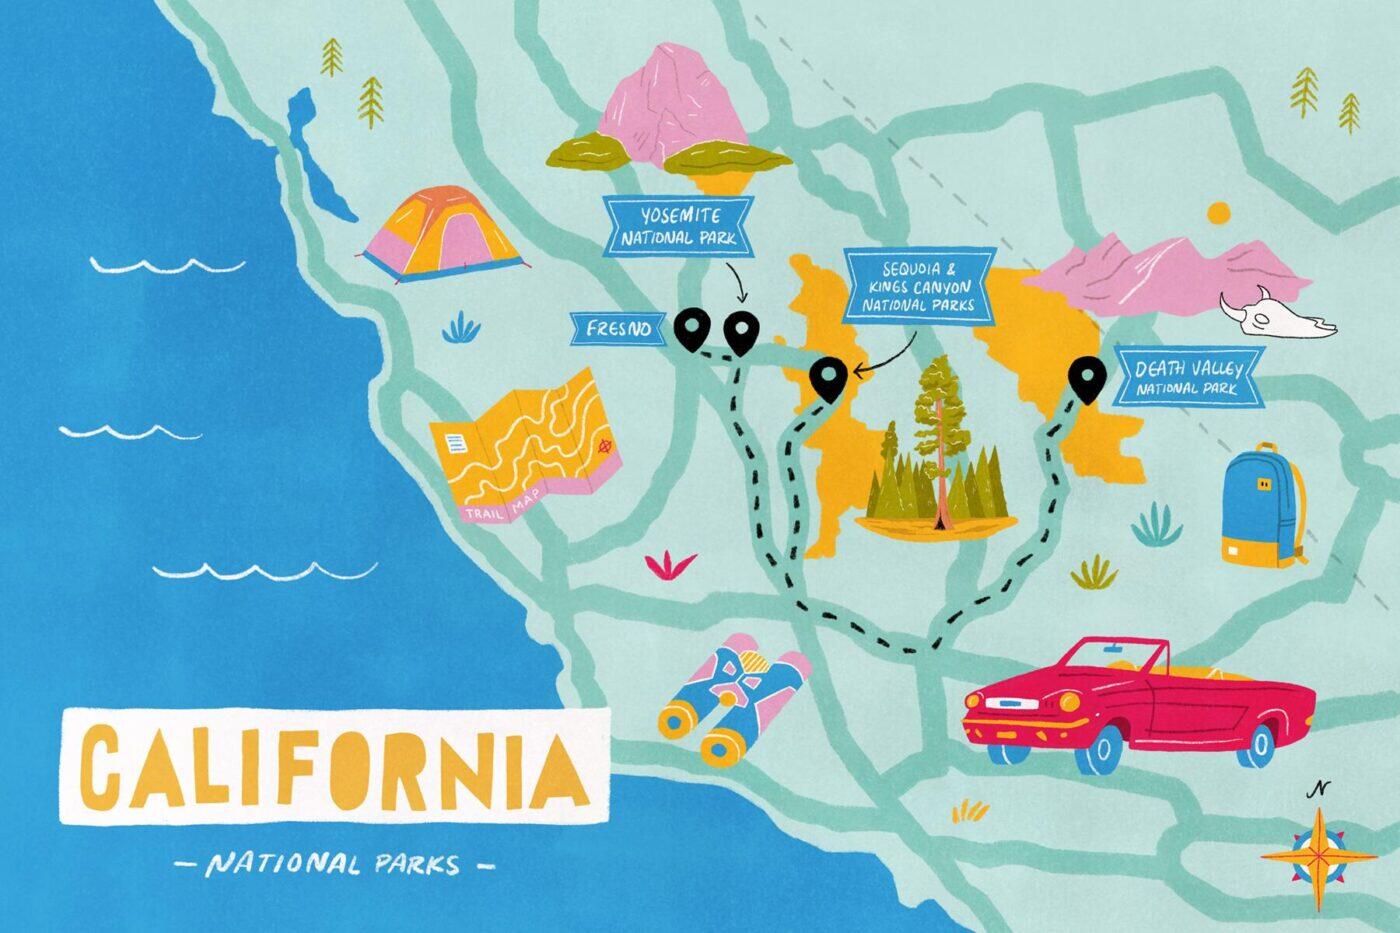 visit california road trips